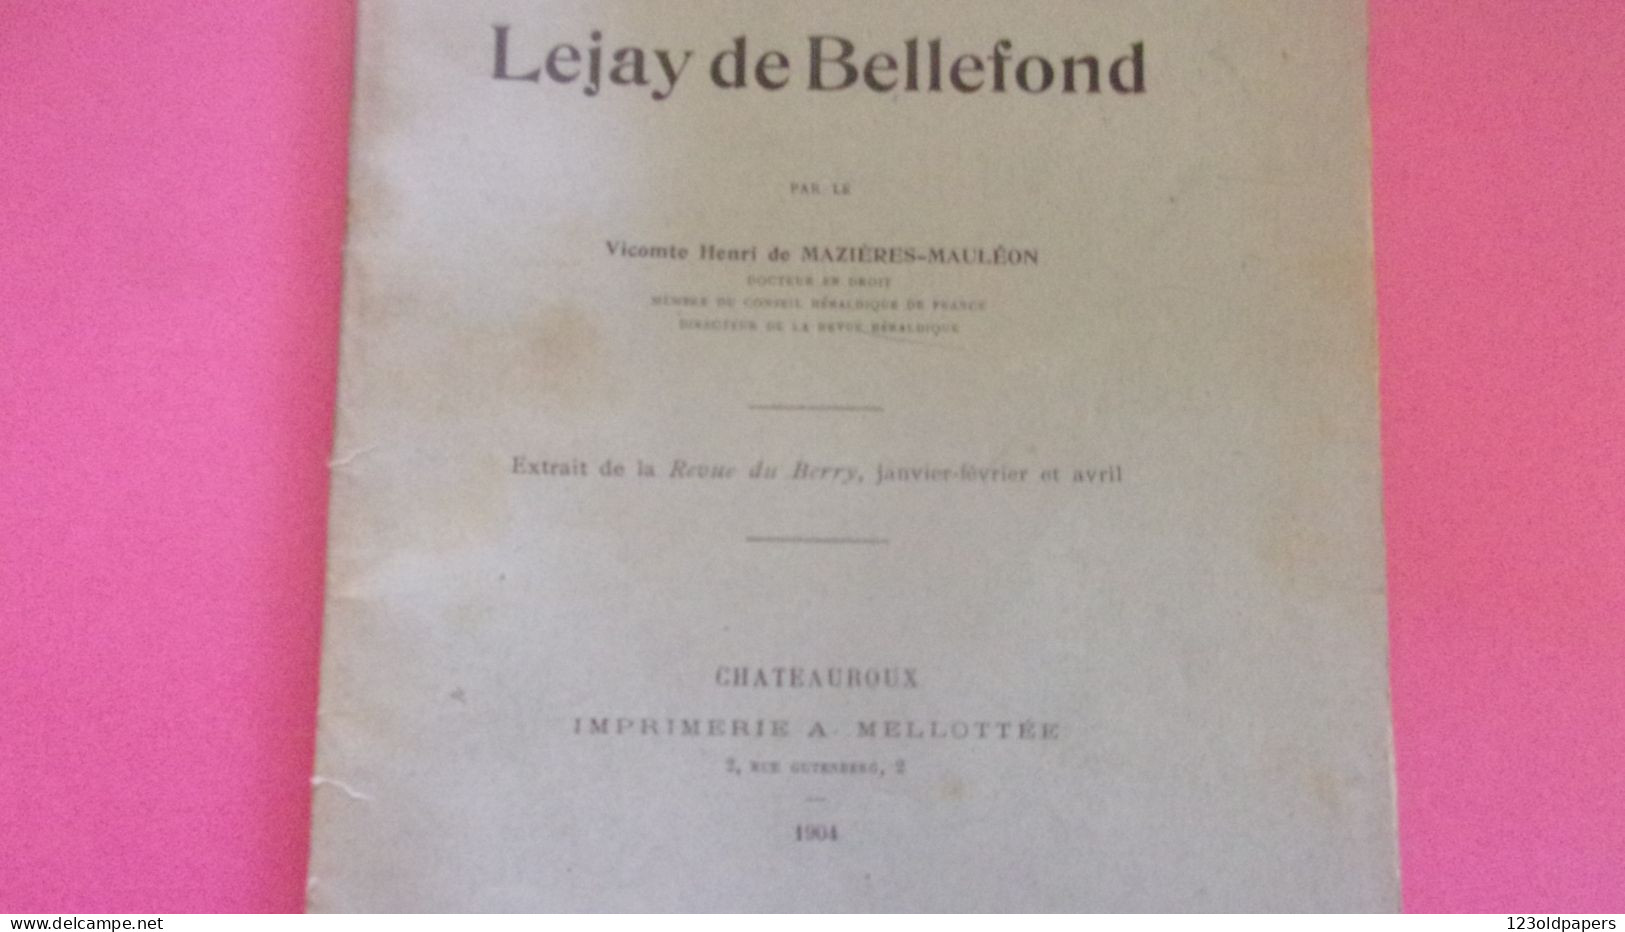 BERRY INDRE 1904 GENEALOGIE DE LA FAMILLE LEJAY DE BELLEFOND PAR VICOMTE DE MAZIERES MAULEON ROMSAC NOBLESSE DE BERRY - 1901-1940